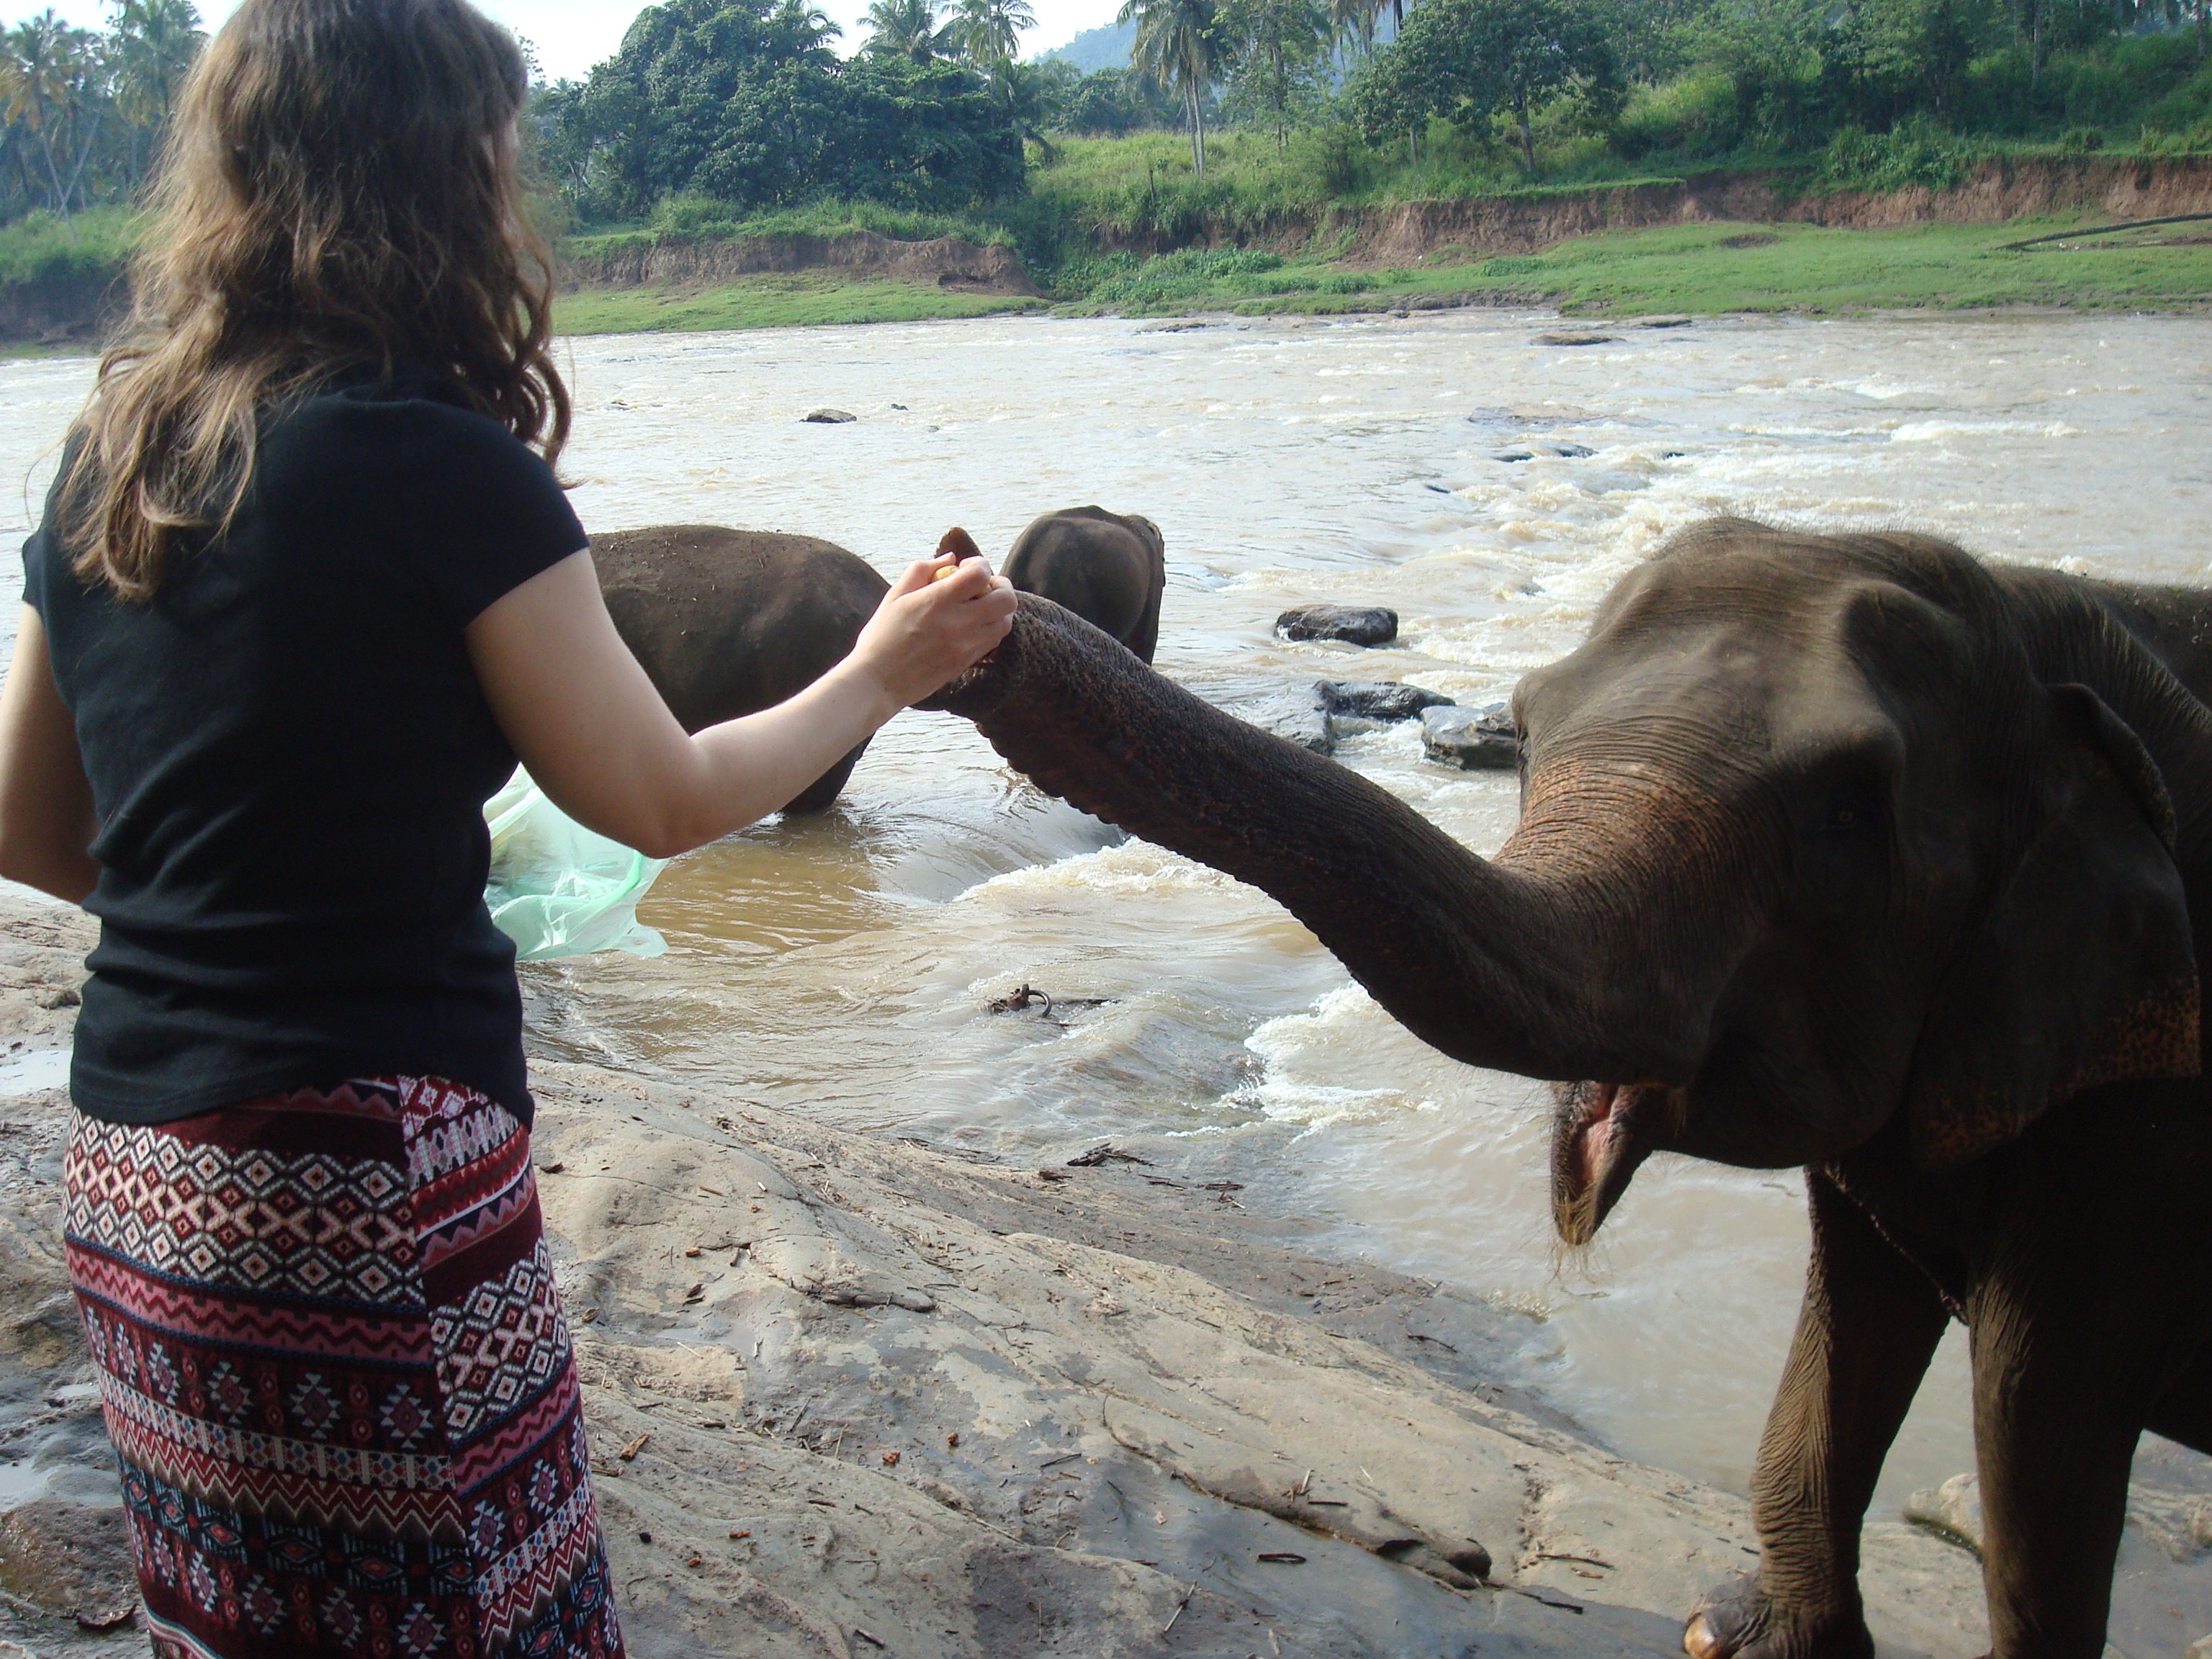 author Tamara feeding an elephant